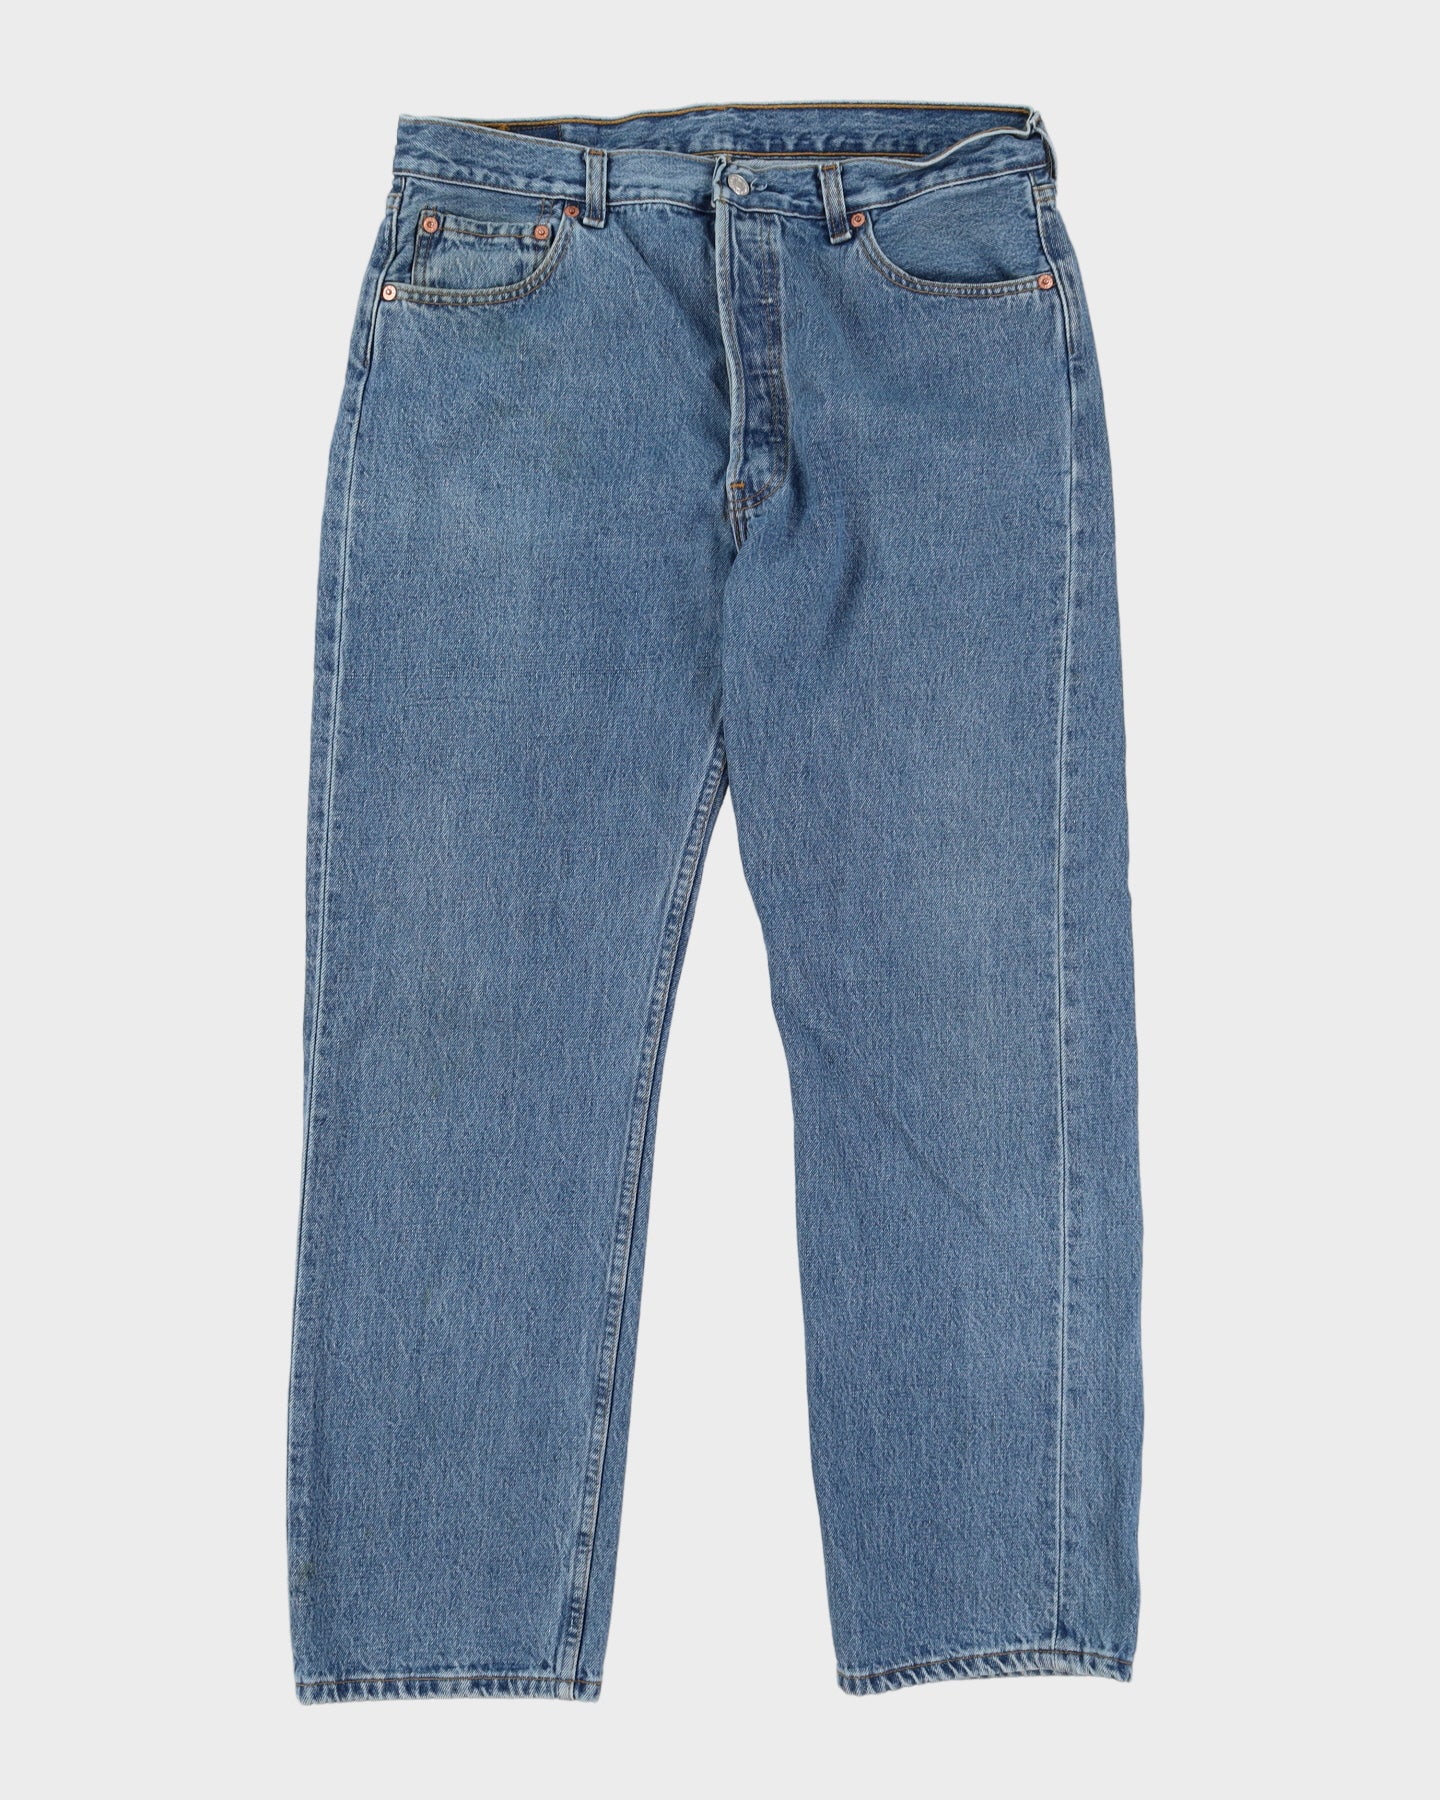 Levi's 501 Blue Jeans - W34 L30